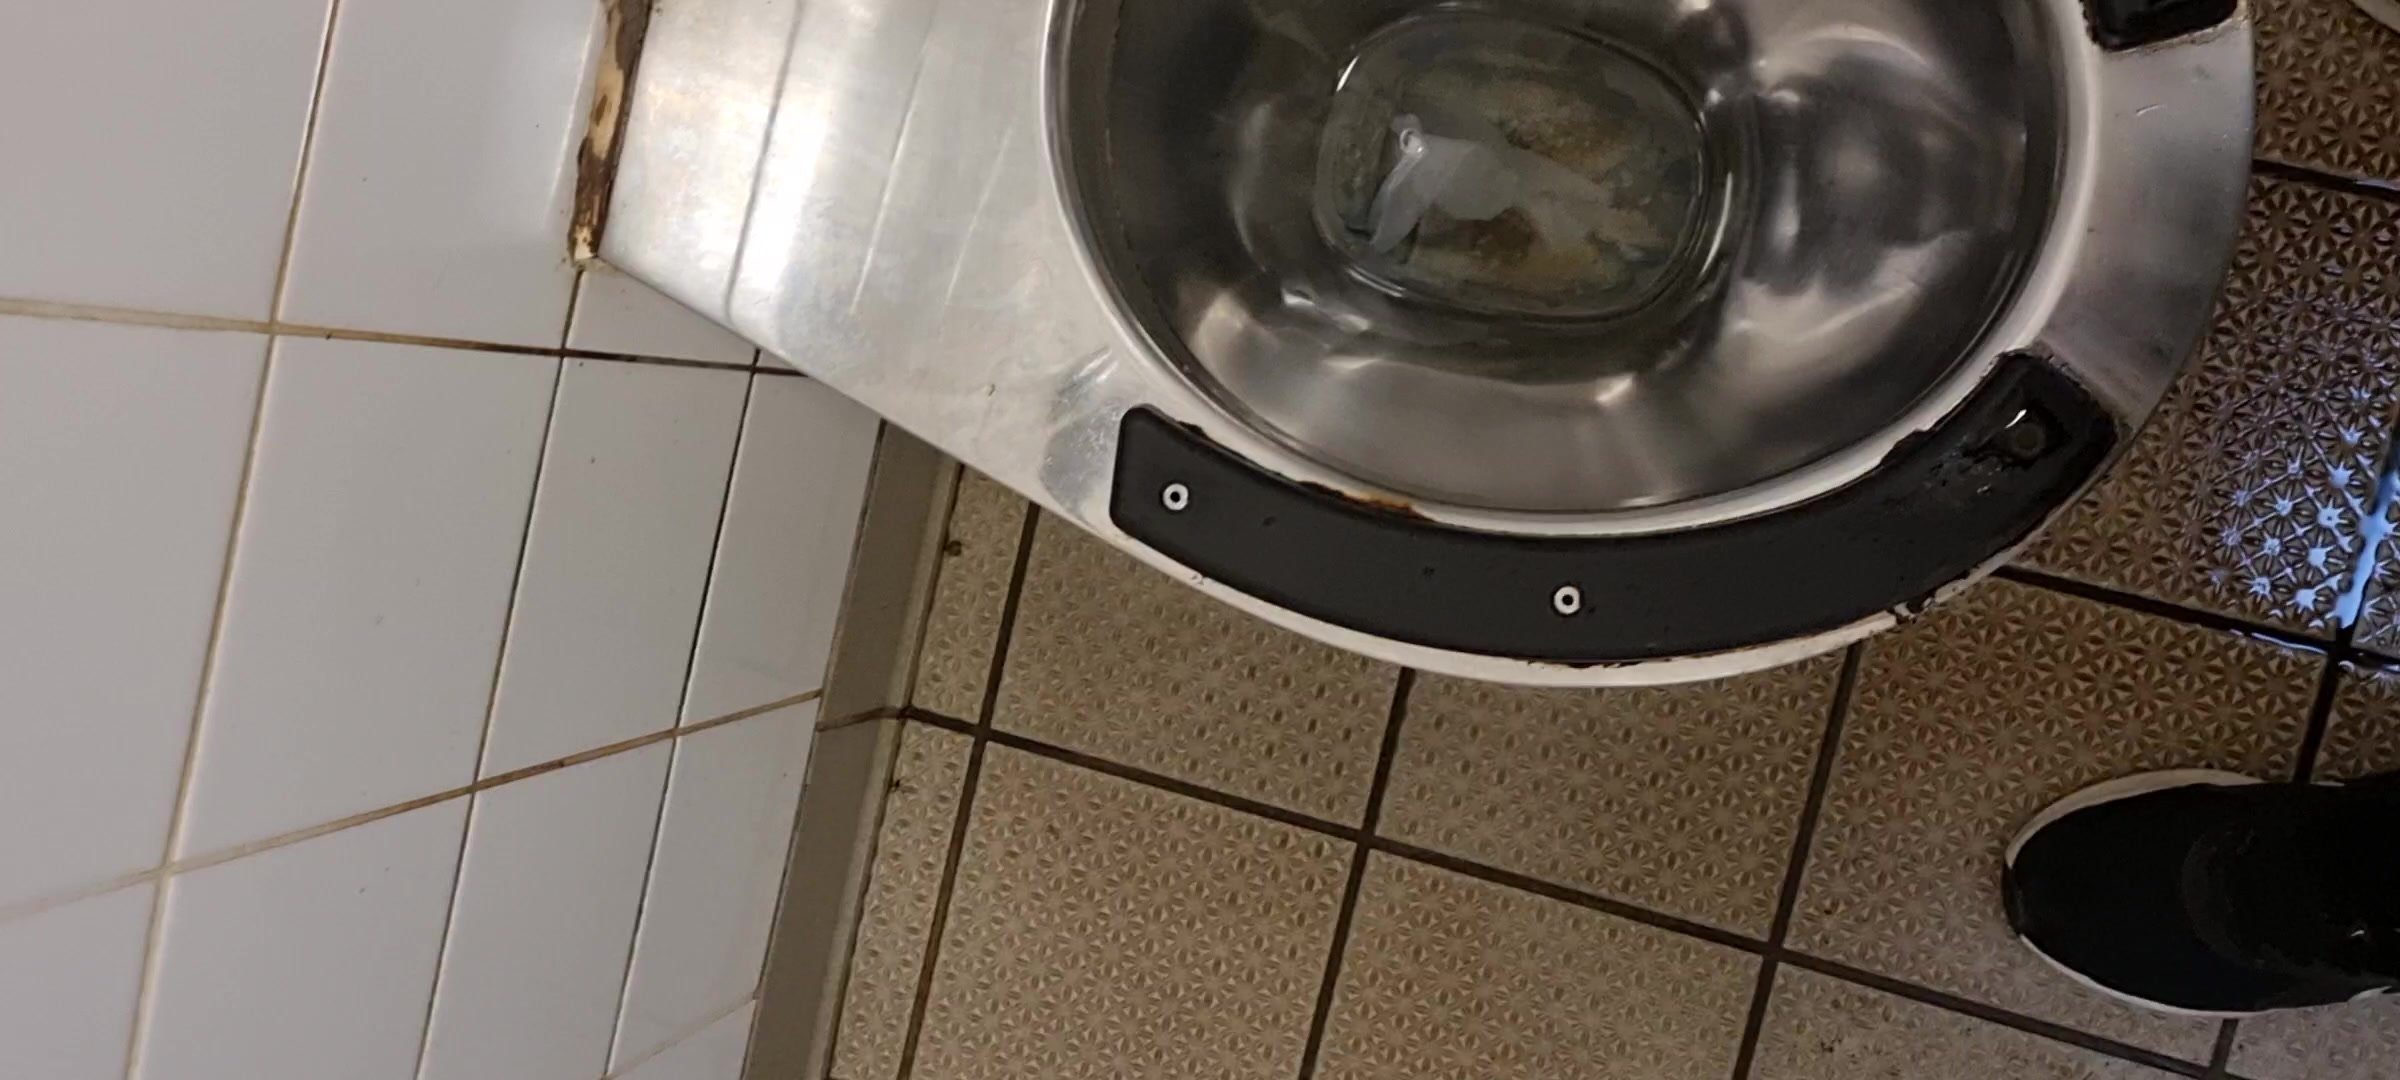 Public Toilet Piss - video 2